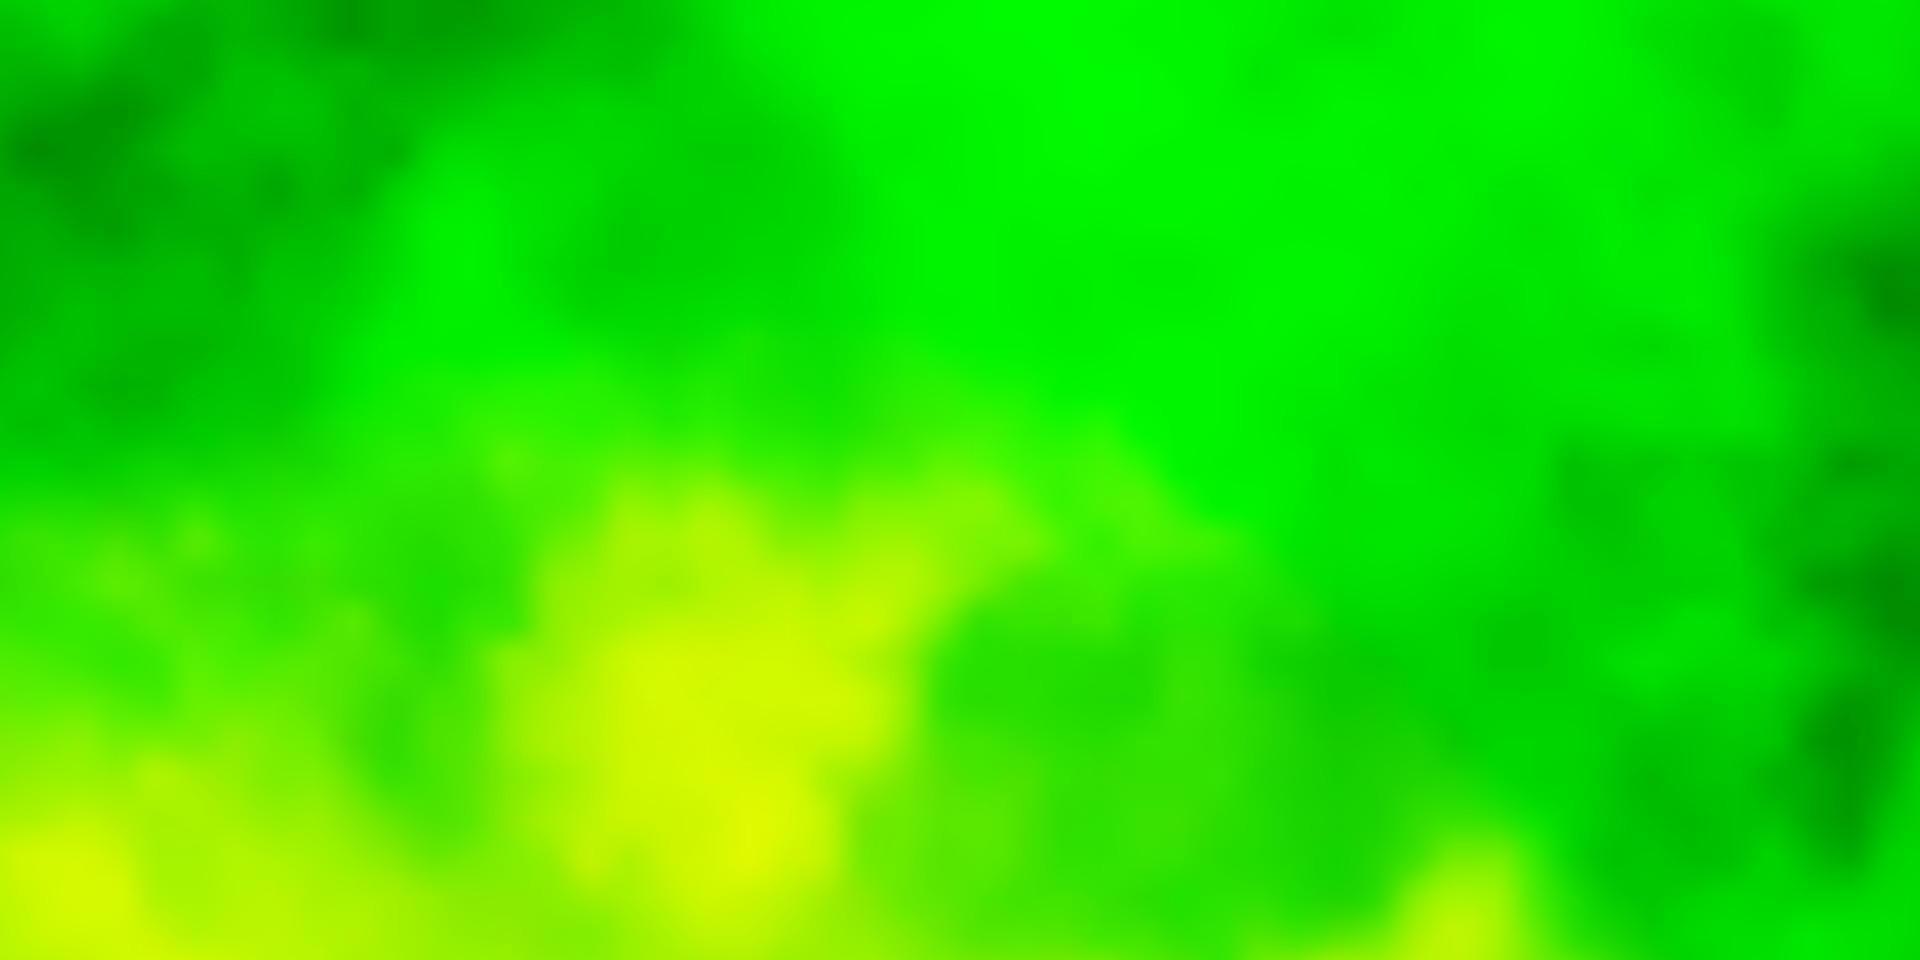 ljusgrön, gul vektorbakgrund med cumulus. vektor